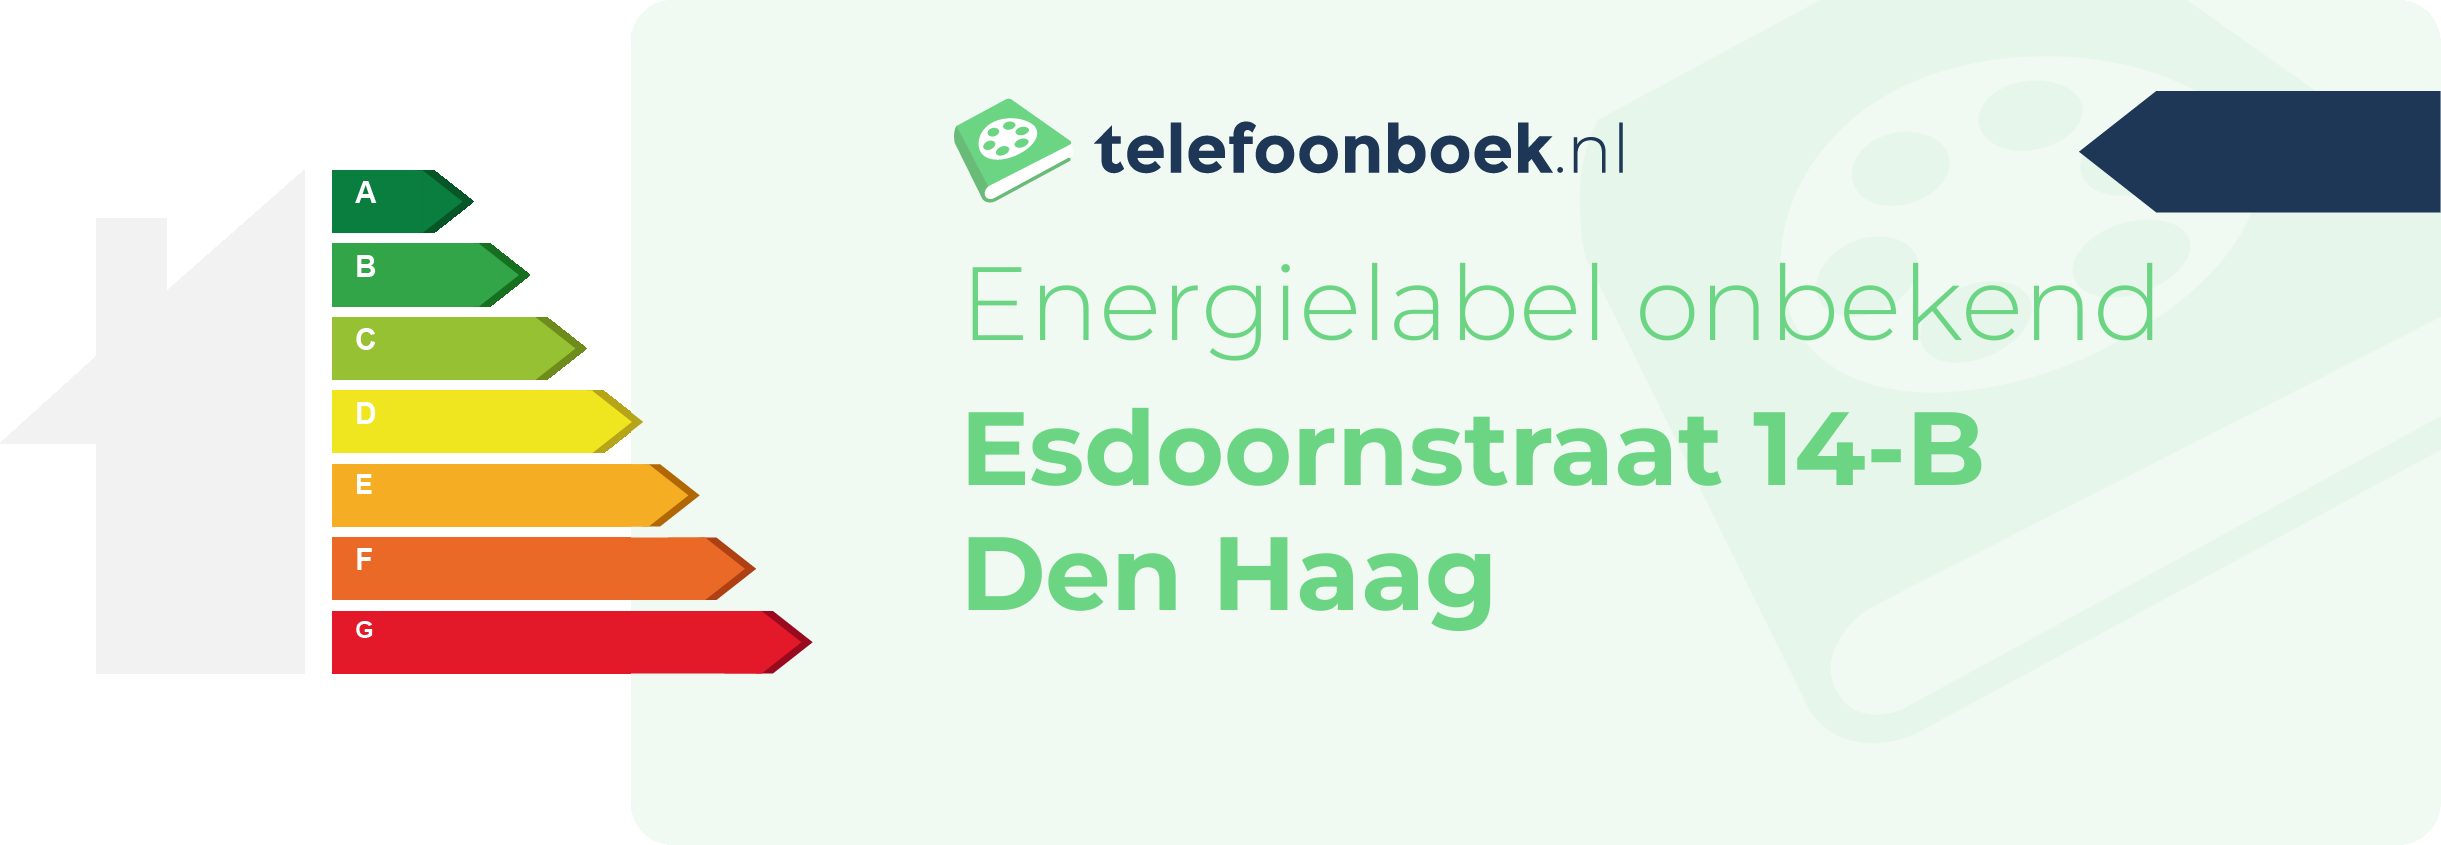 Energielabel Esdoornstraat 14-B Den Haag